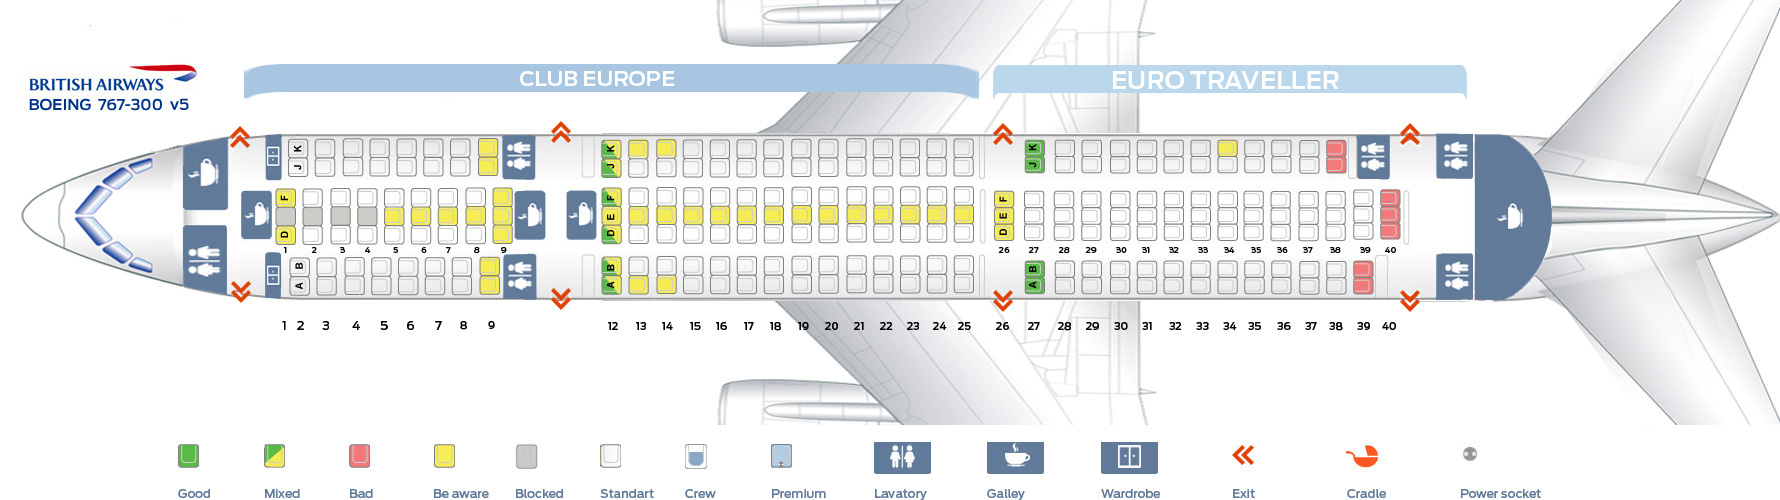 Seat map Boeing 767300 British Airways. Best seats in plane